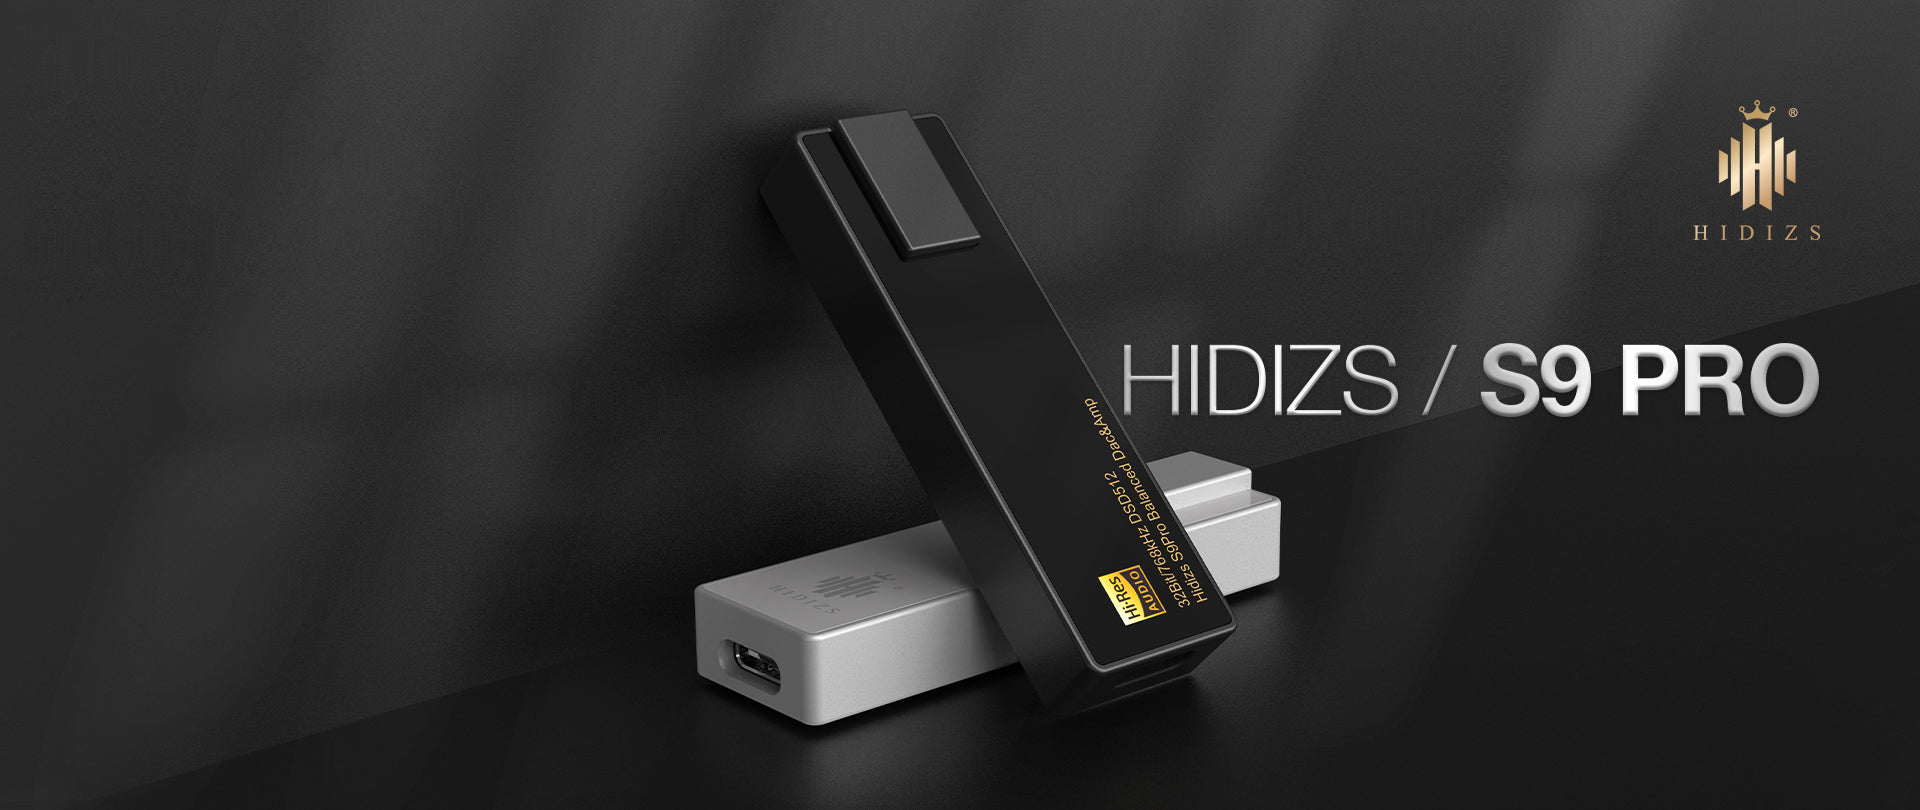 HIDIZS-S9PRO-PC-23030901